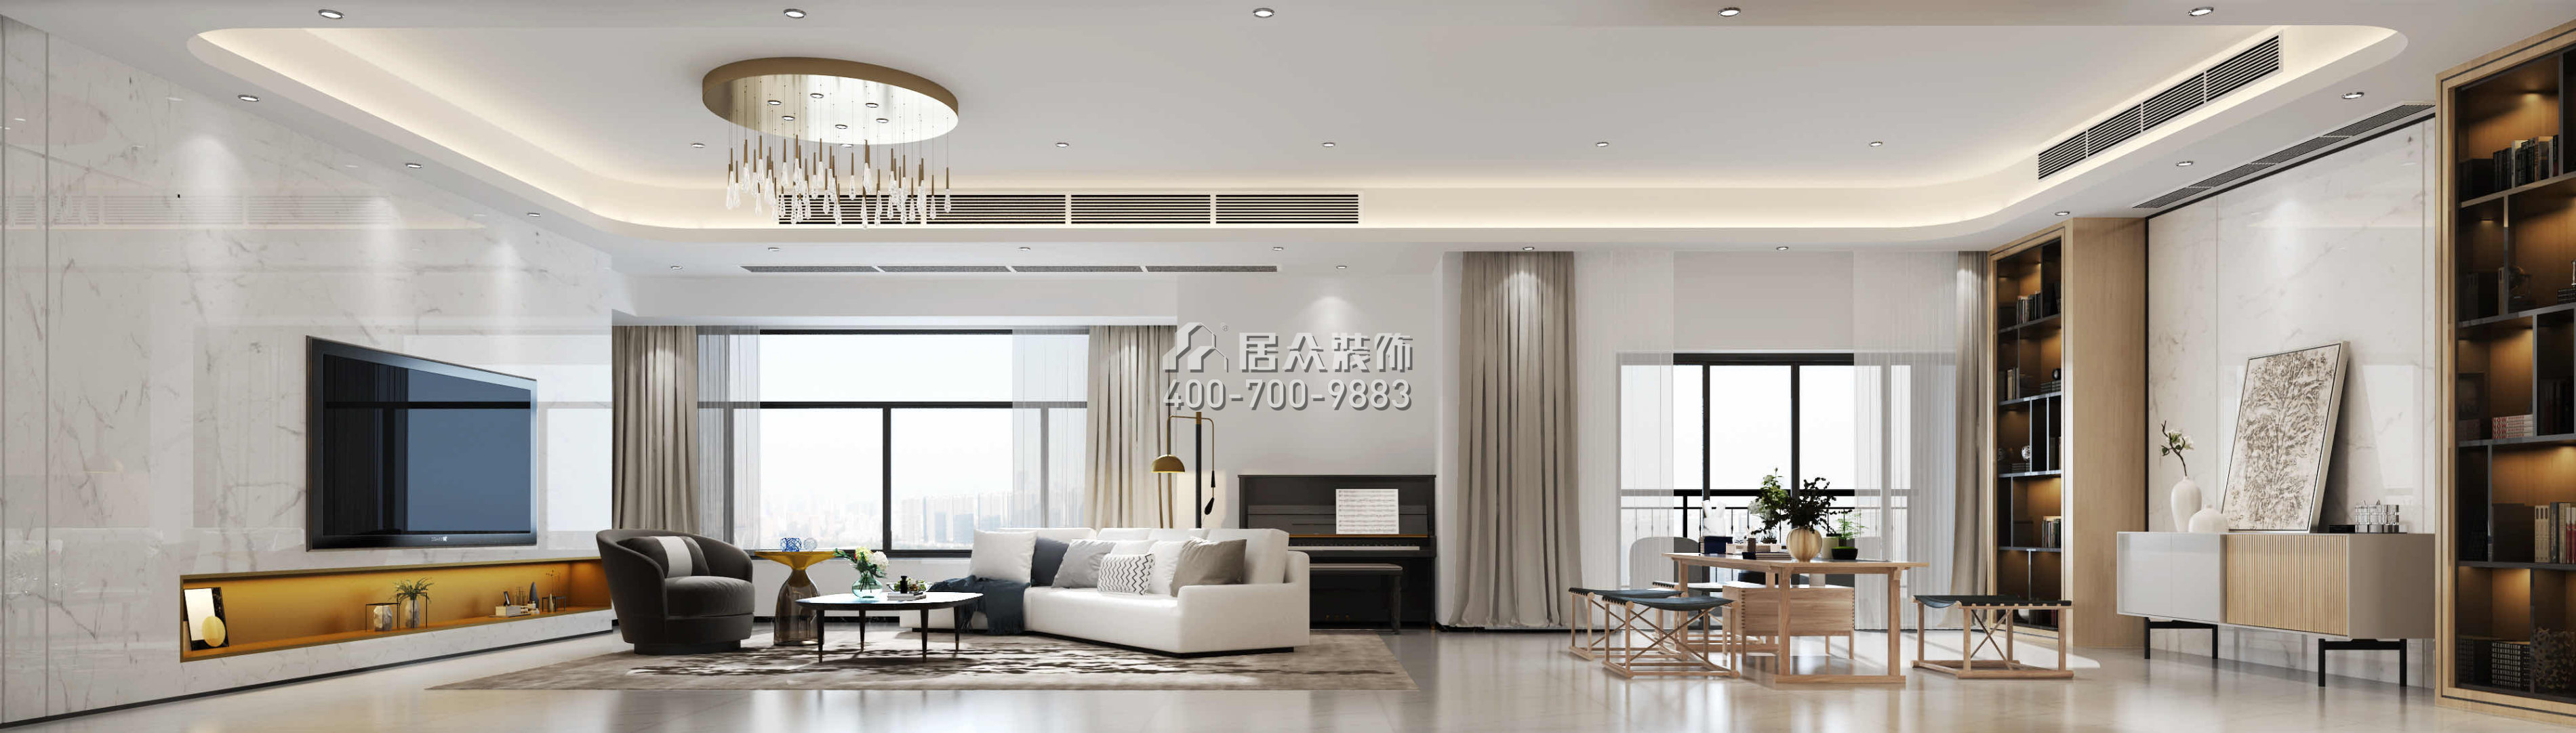 中海银海湾320平方米现代简约风格平层户型客厅装修效果图